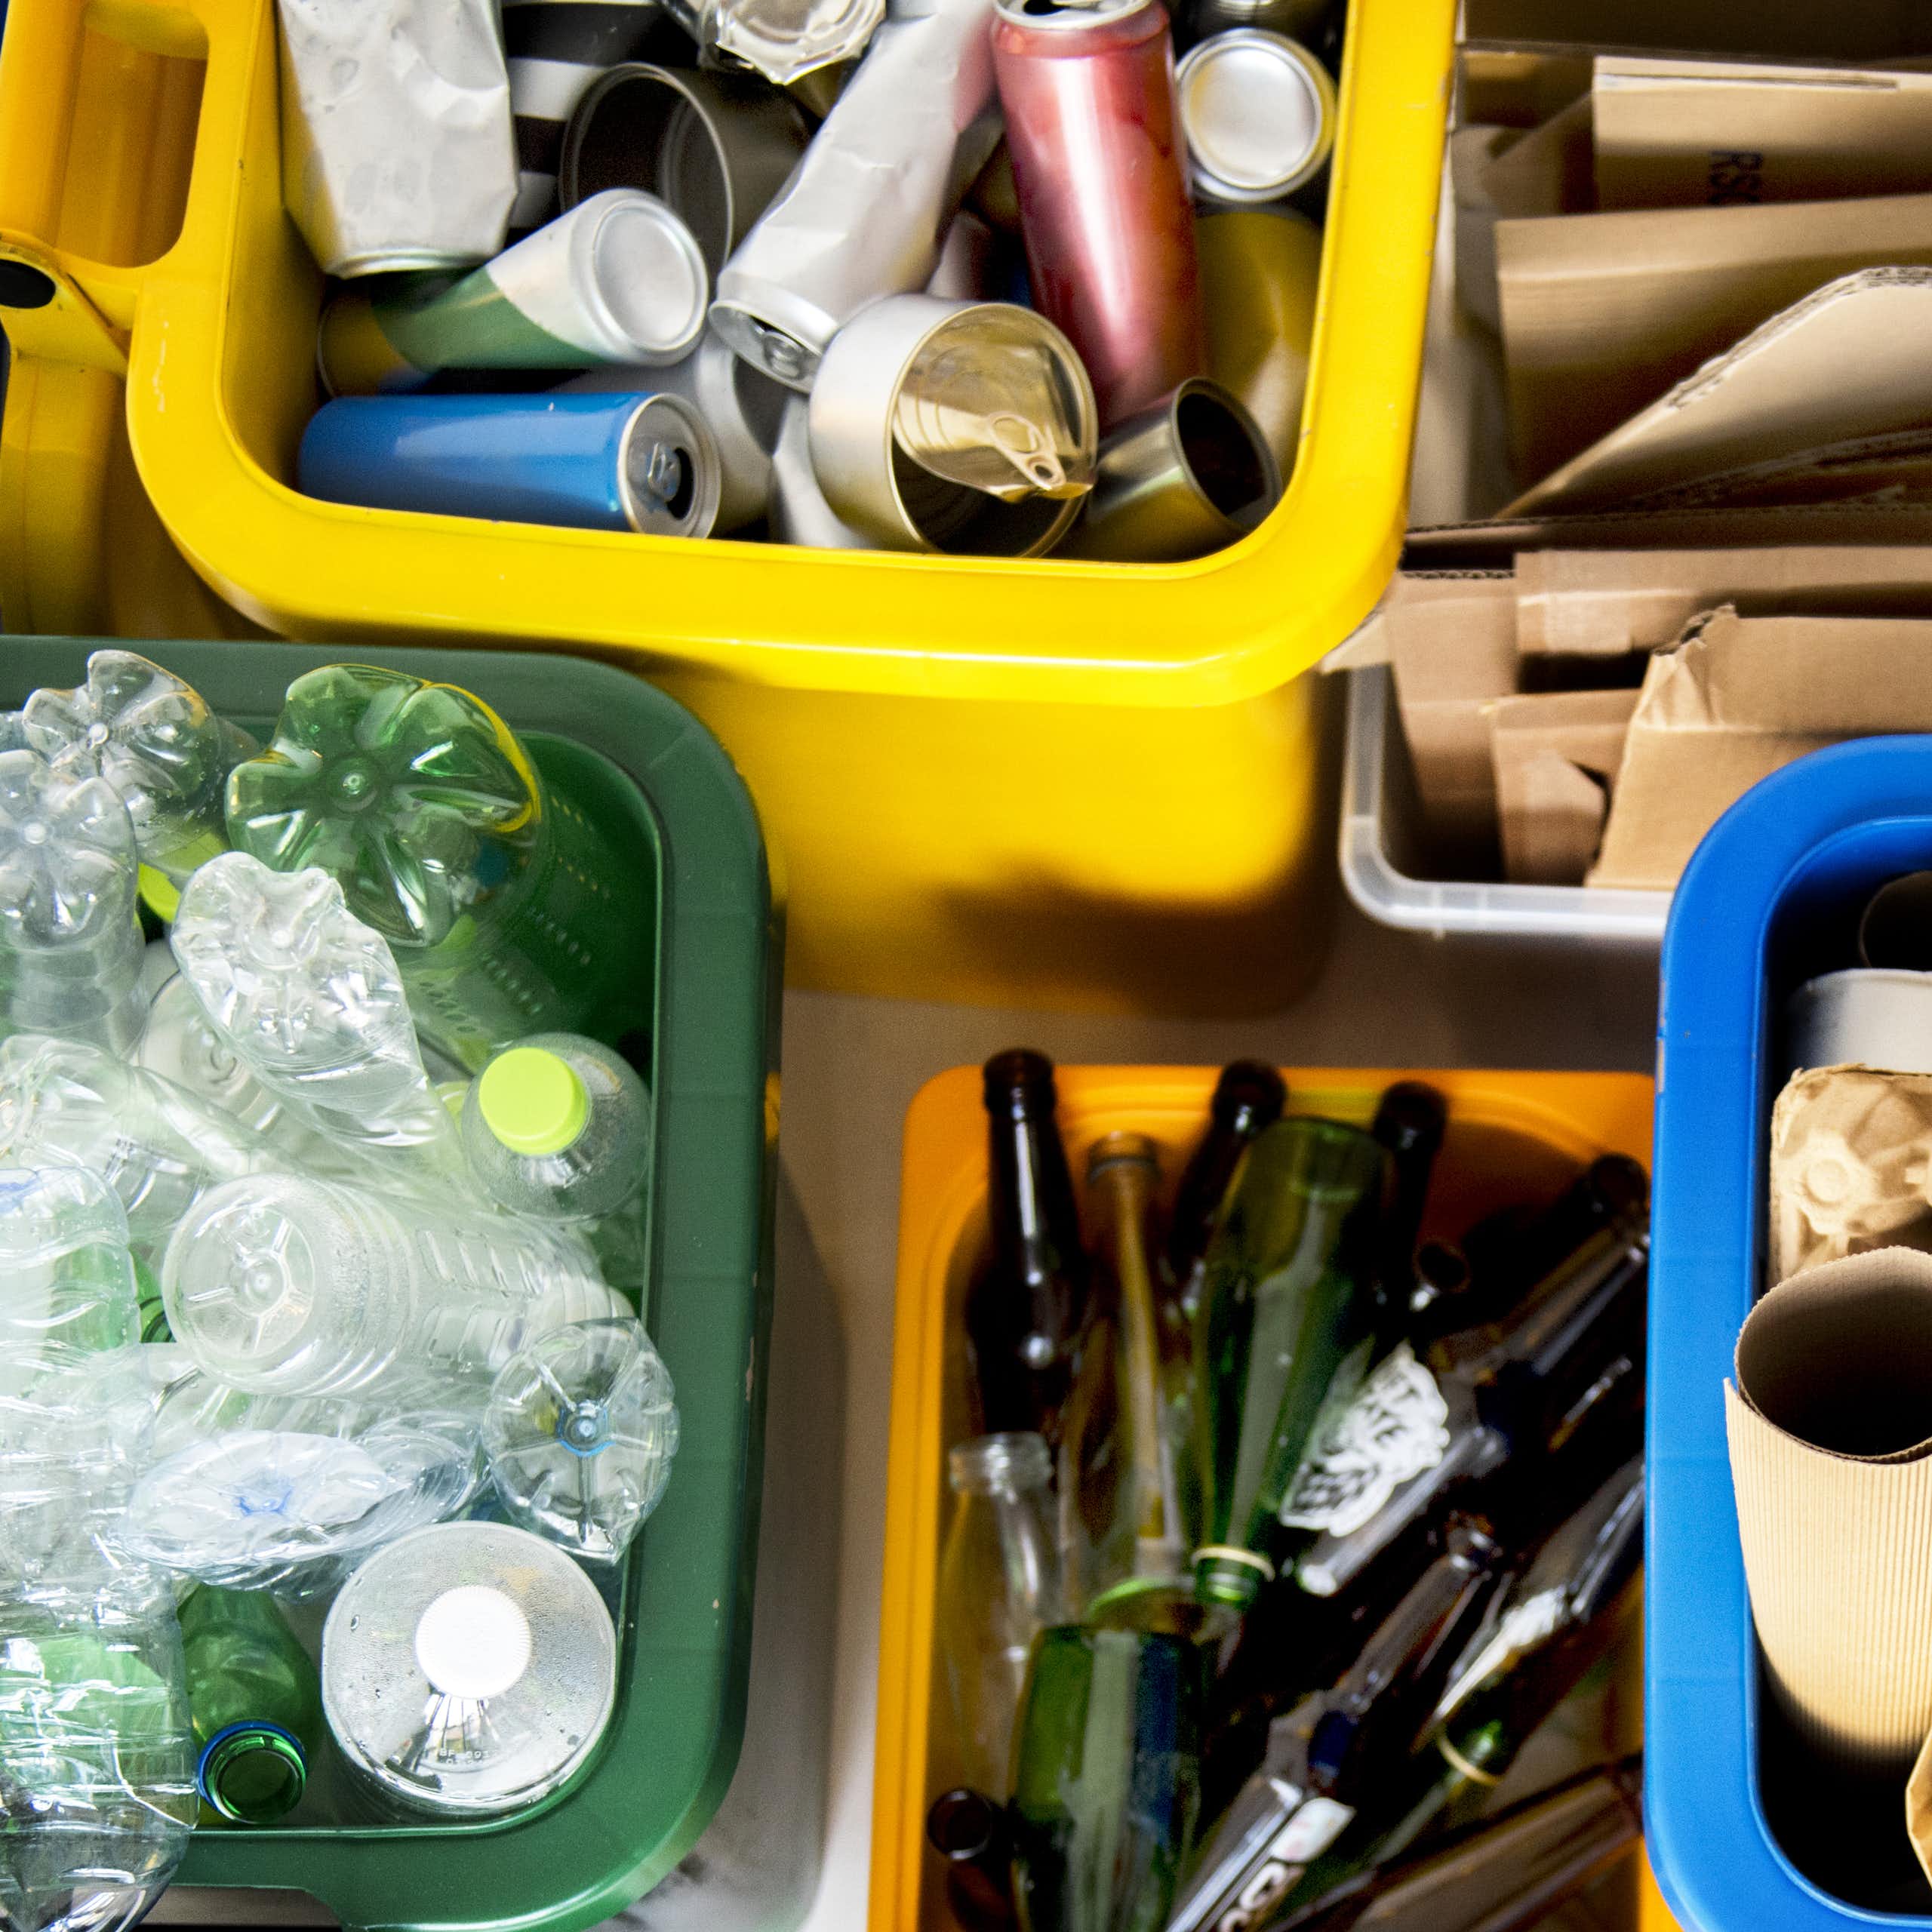 Des bacs à recyclage contenant du plastique, des cannettes, du verre et du carton